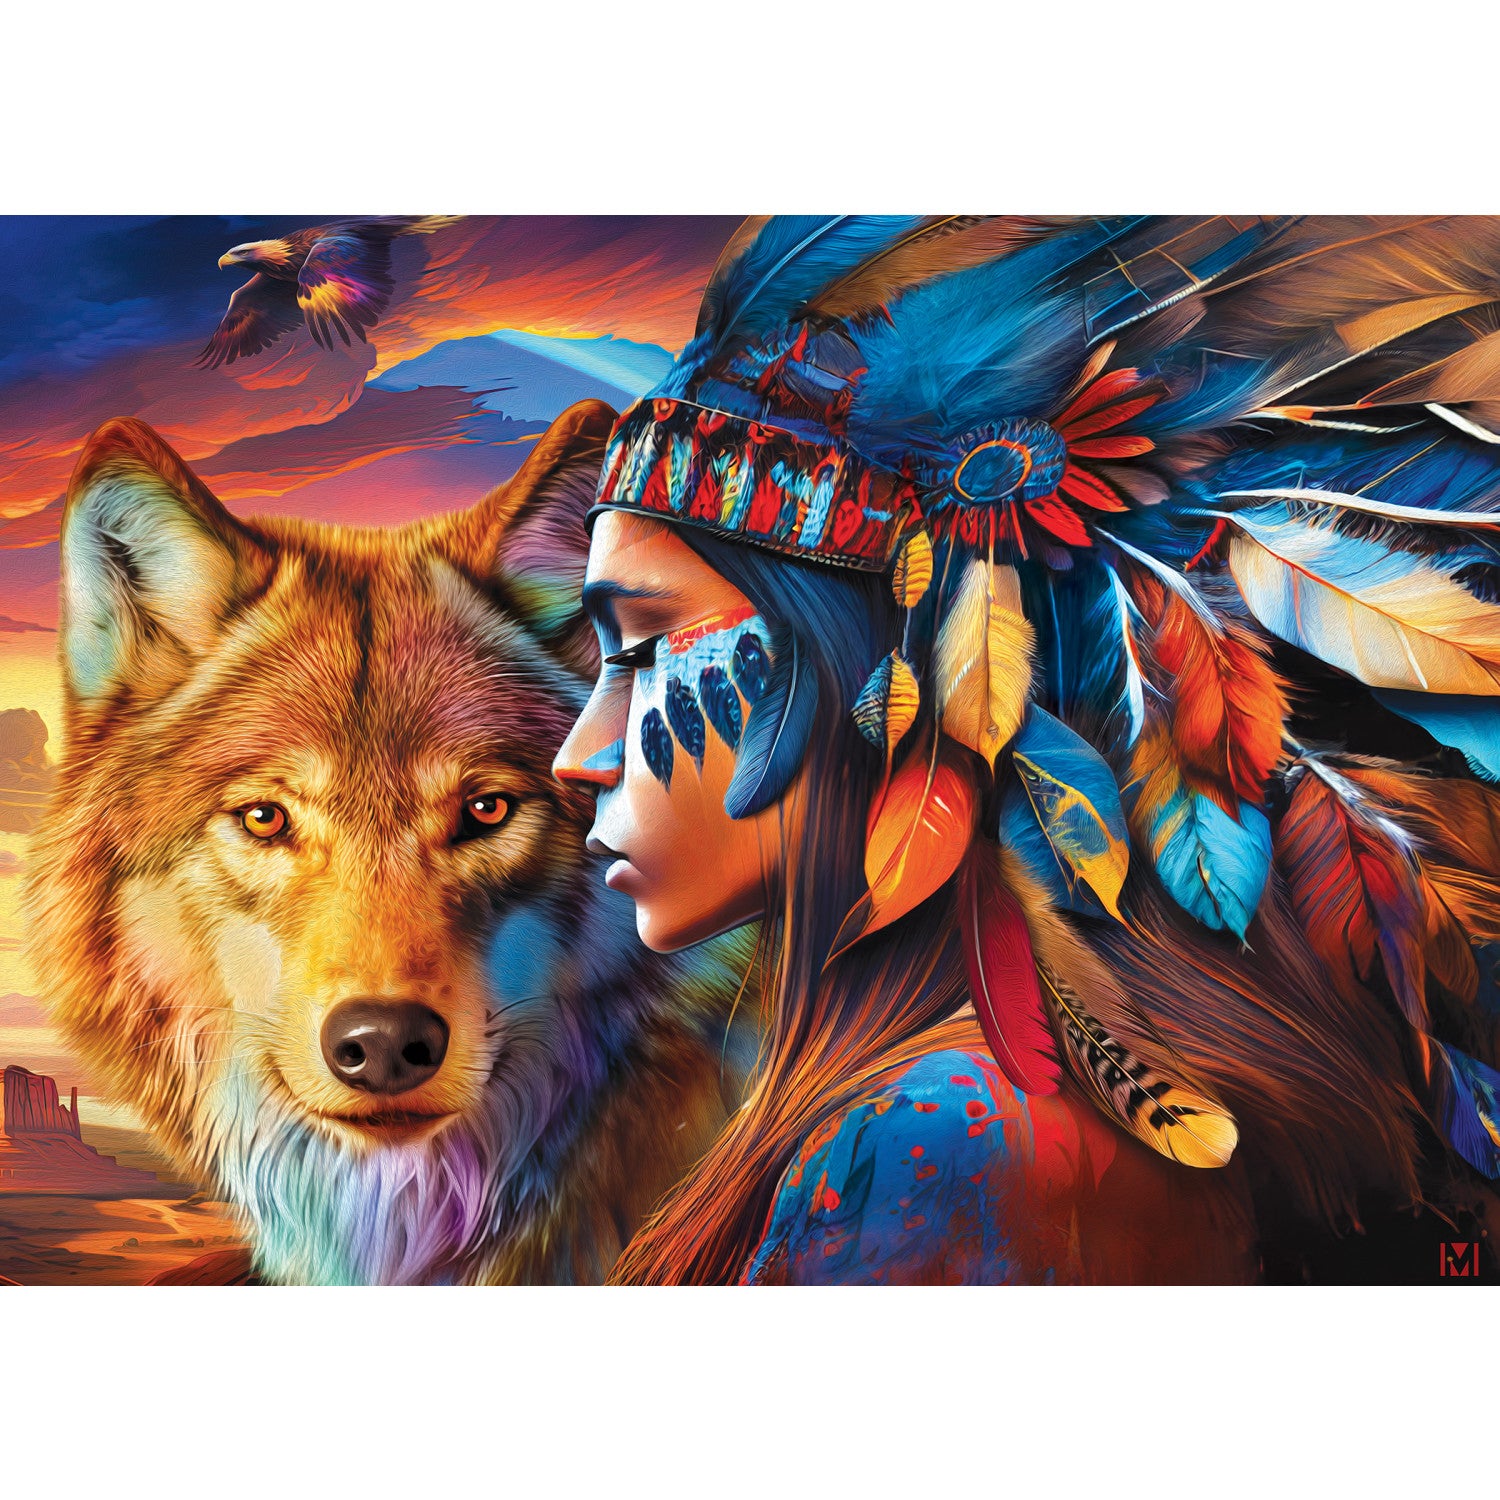 Tribal Spirit - Spirit of the Wilderness 500 Piece Puzzle